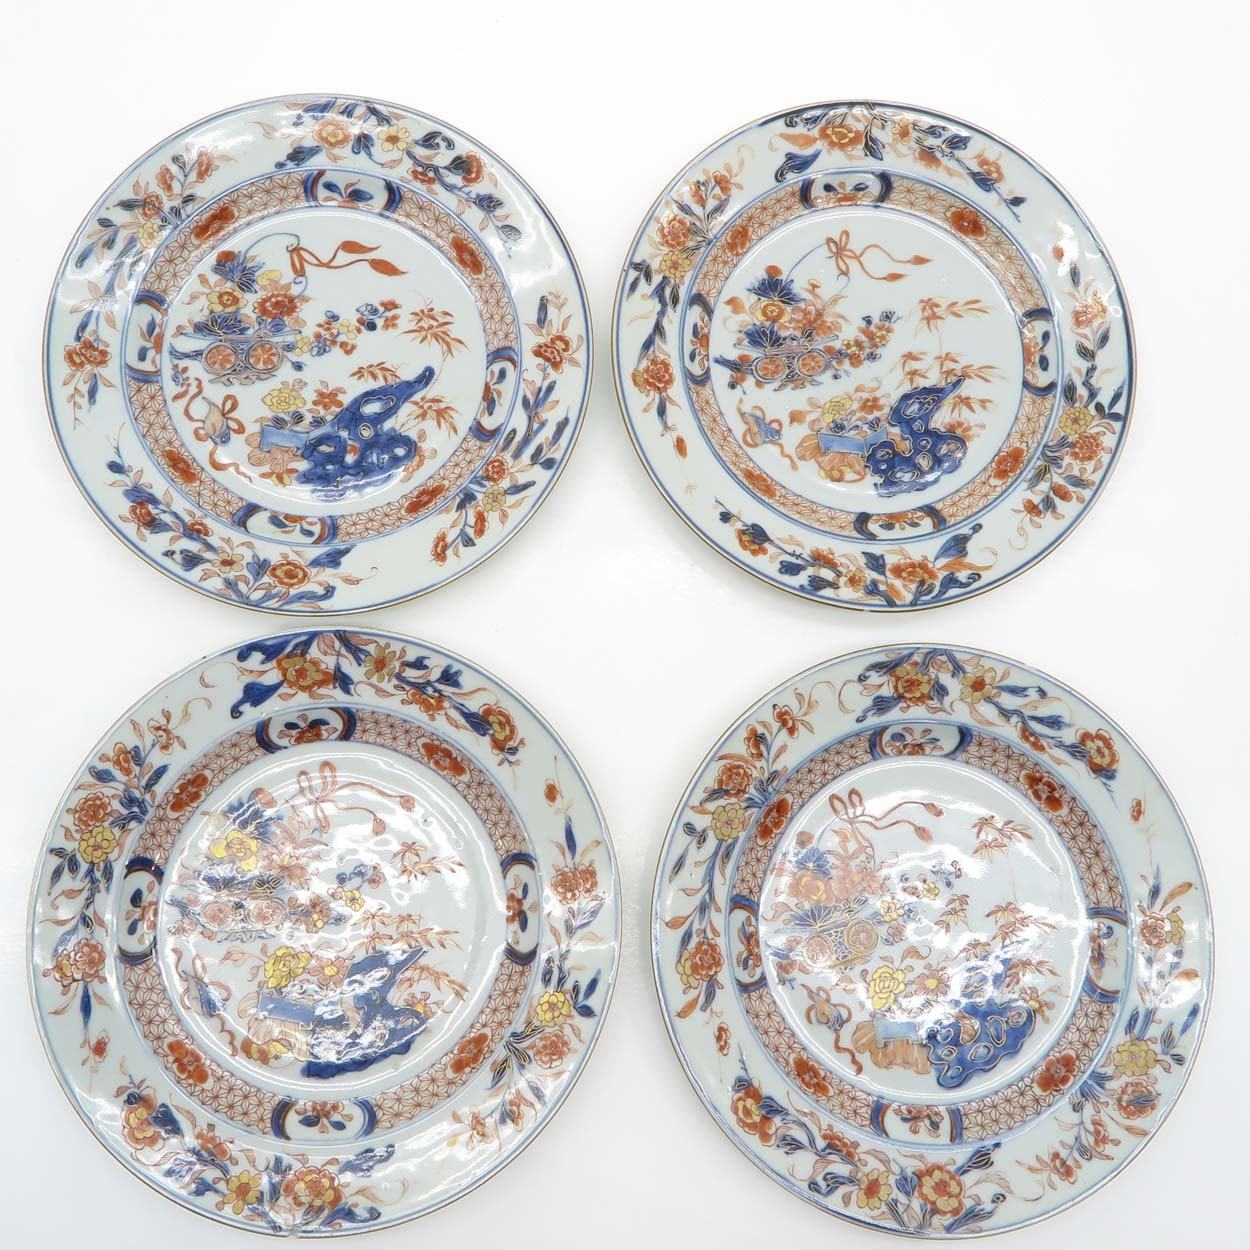 18th Century China Porcelan Imari Plates